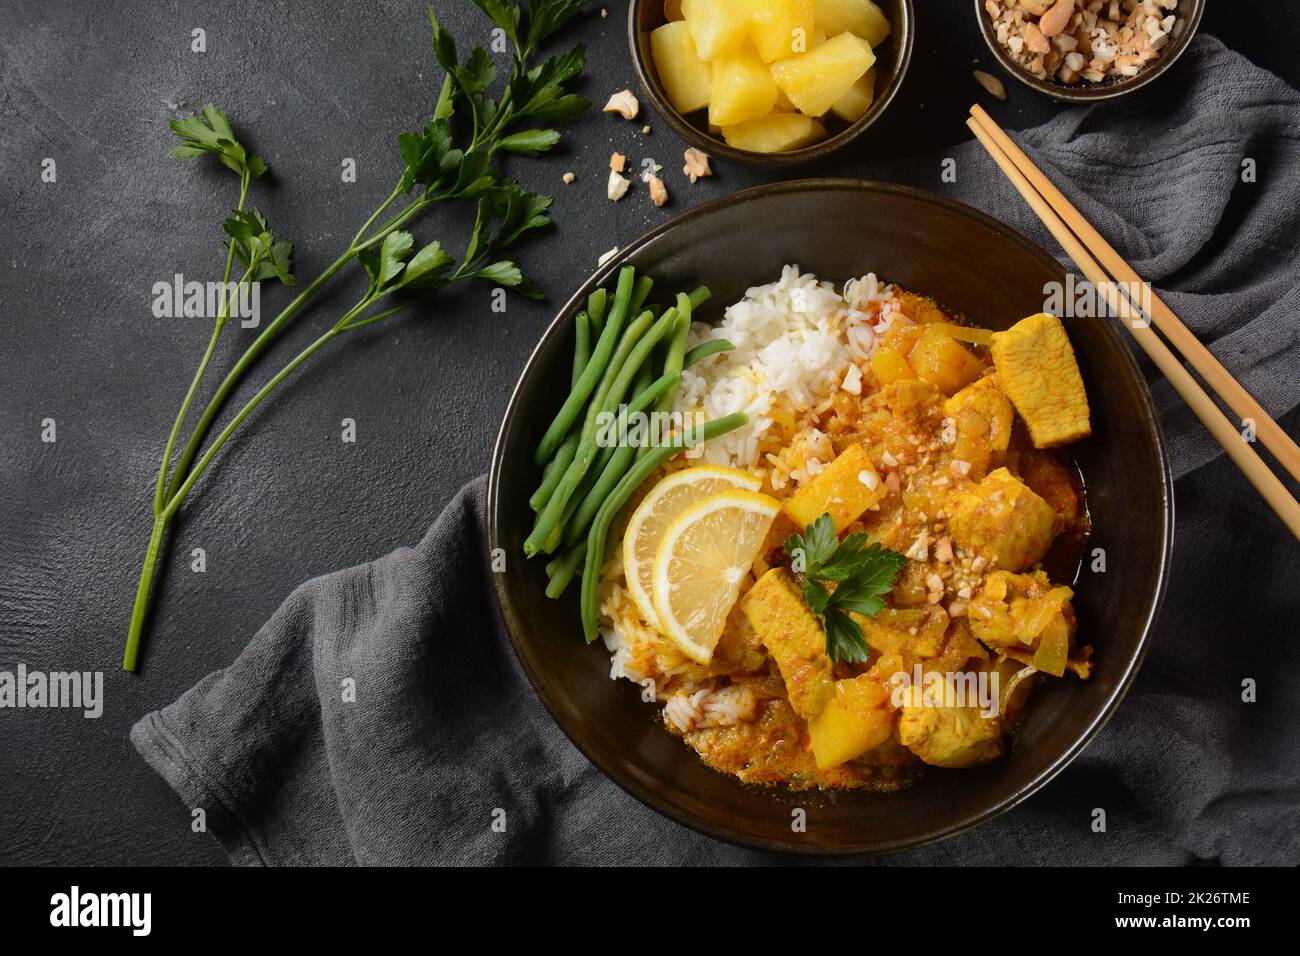 Ein Chicken Massaman Curry in schwarzer Schüssel auf dunklem Hintergrund. Massaman Curry ist das beste thailändische Gericht mit Hühnerfleisch, Kartoffeln, Zwiebeln und vielen Gewürzen, das von malaiischen und thailändischen muslimischen Kulturen beeinflusst wird. Stockfoto